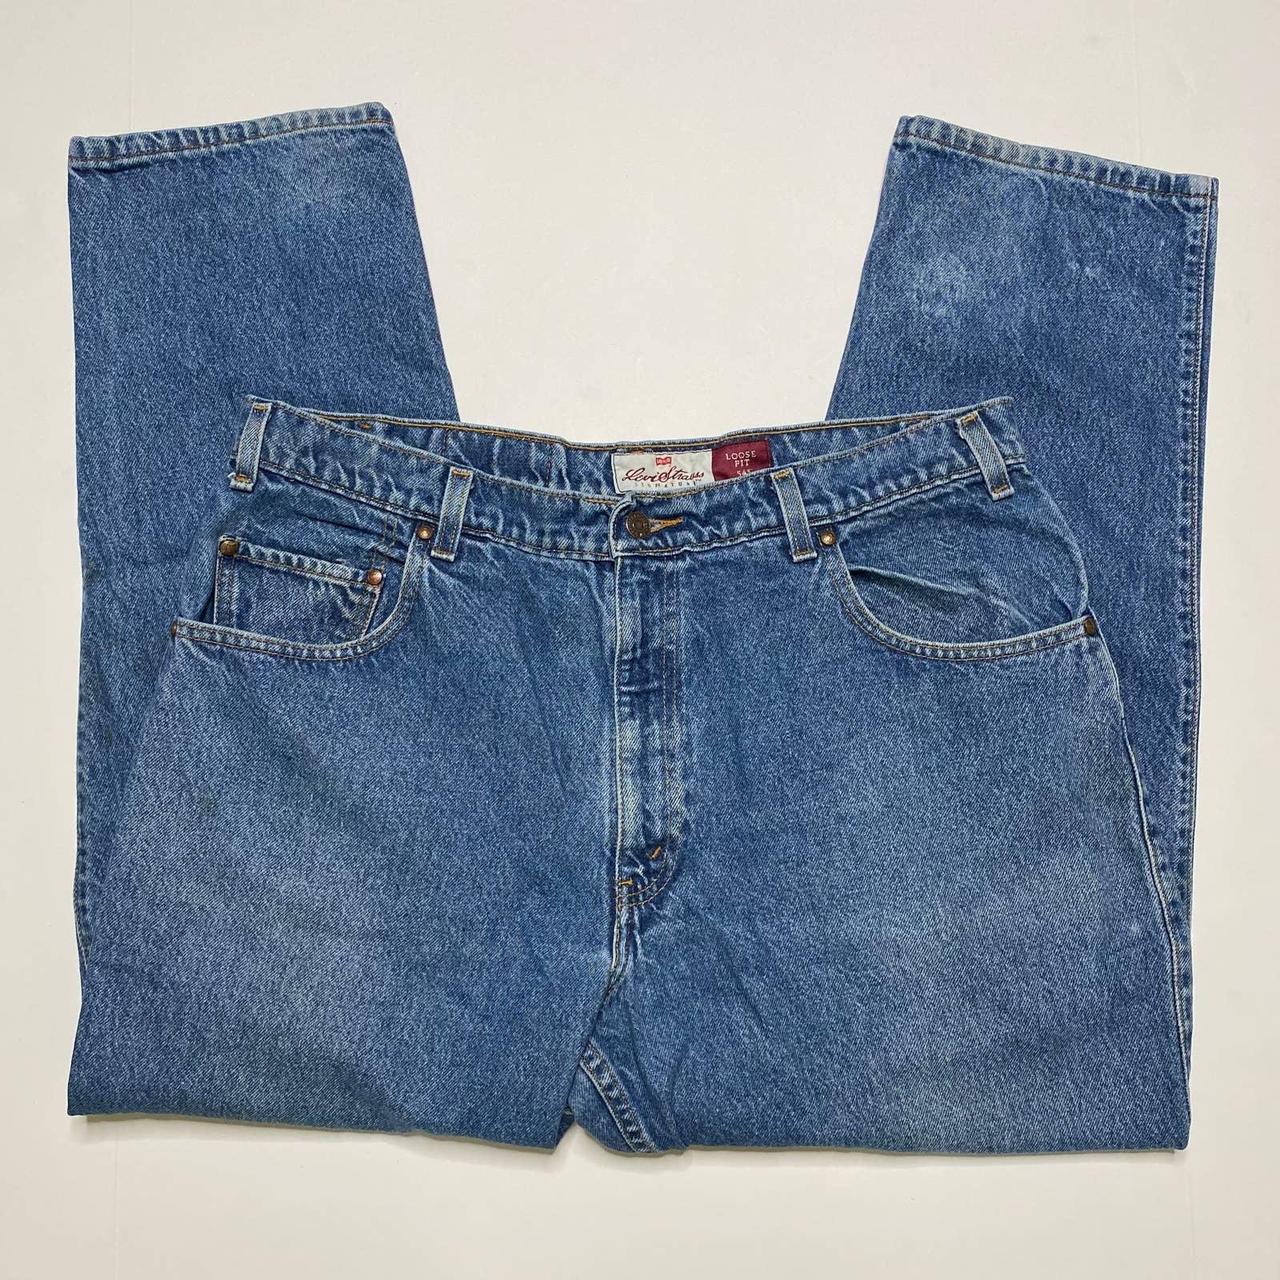 Vintage Levis 545 Jeans Brown Tab Medium Wash Loose... - Depop